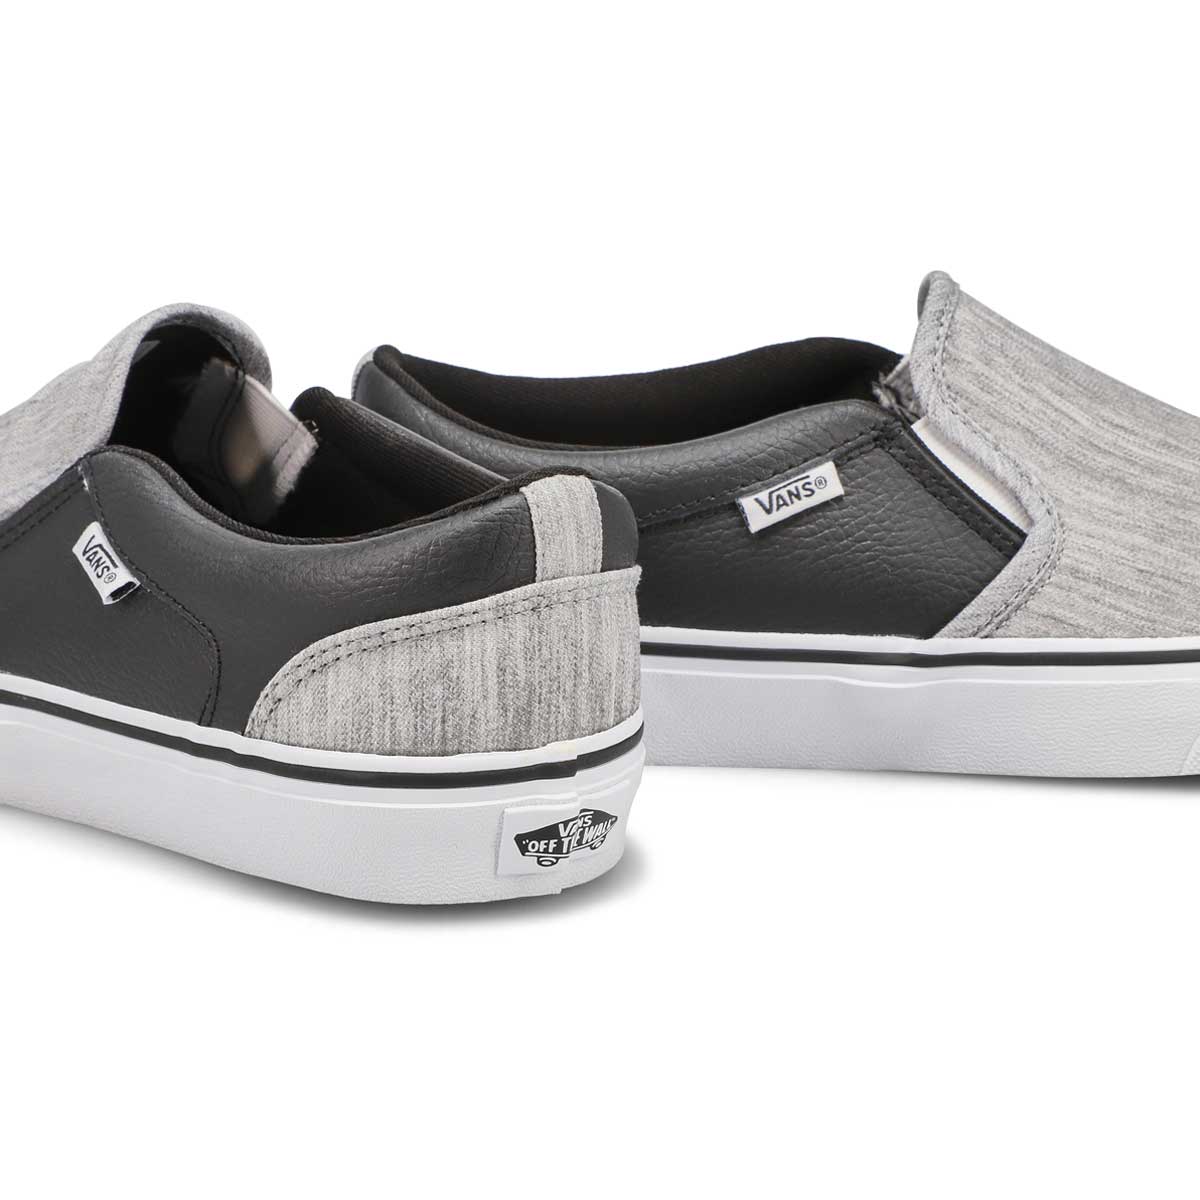 Men's Asher Slip On Sneaker - Grey/Black